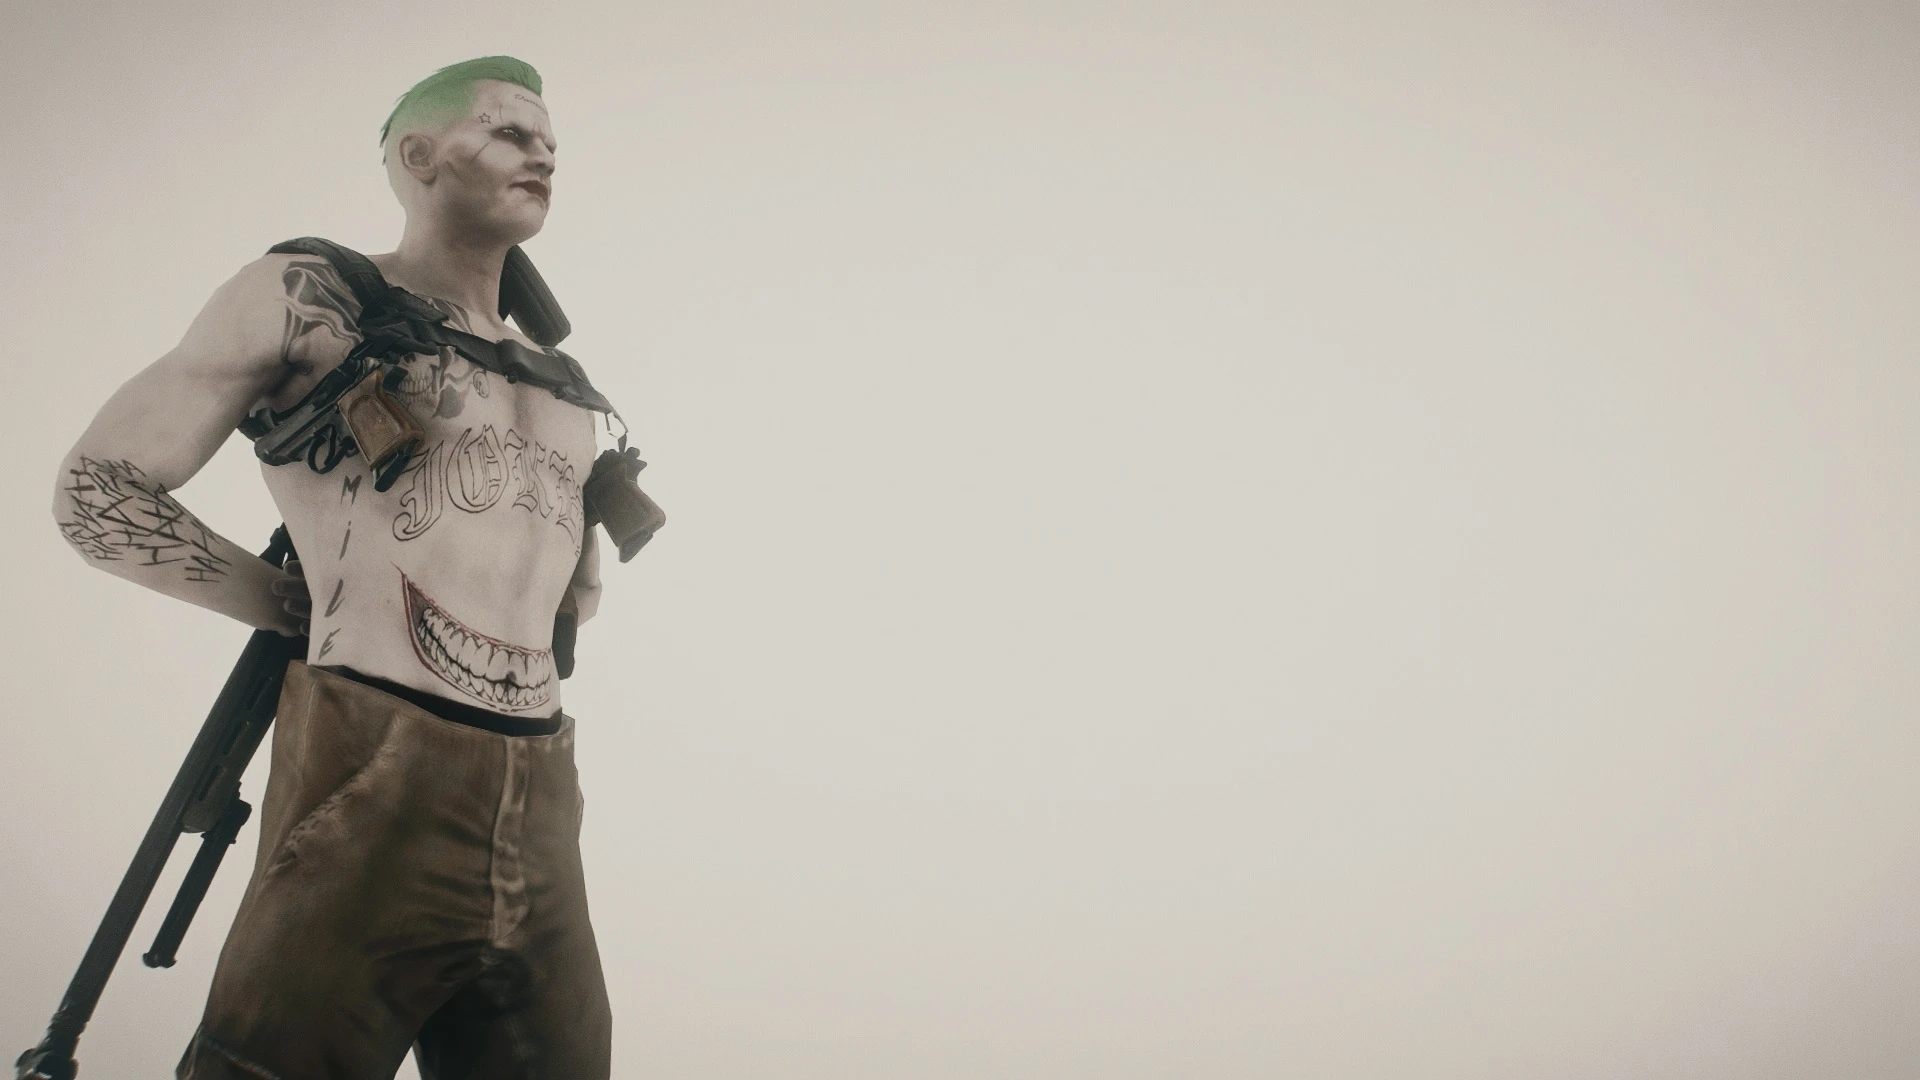 Wasteland Joker at Fallout 4 Nexus - Mods and community